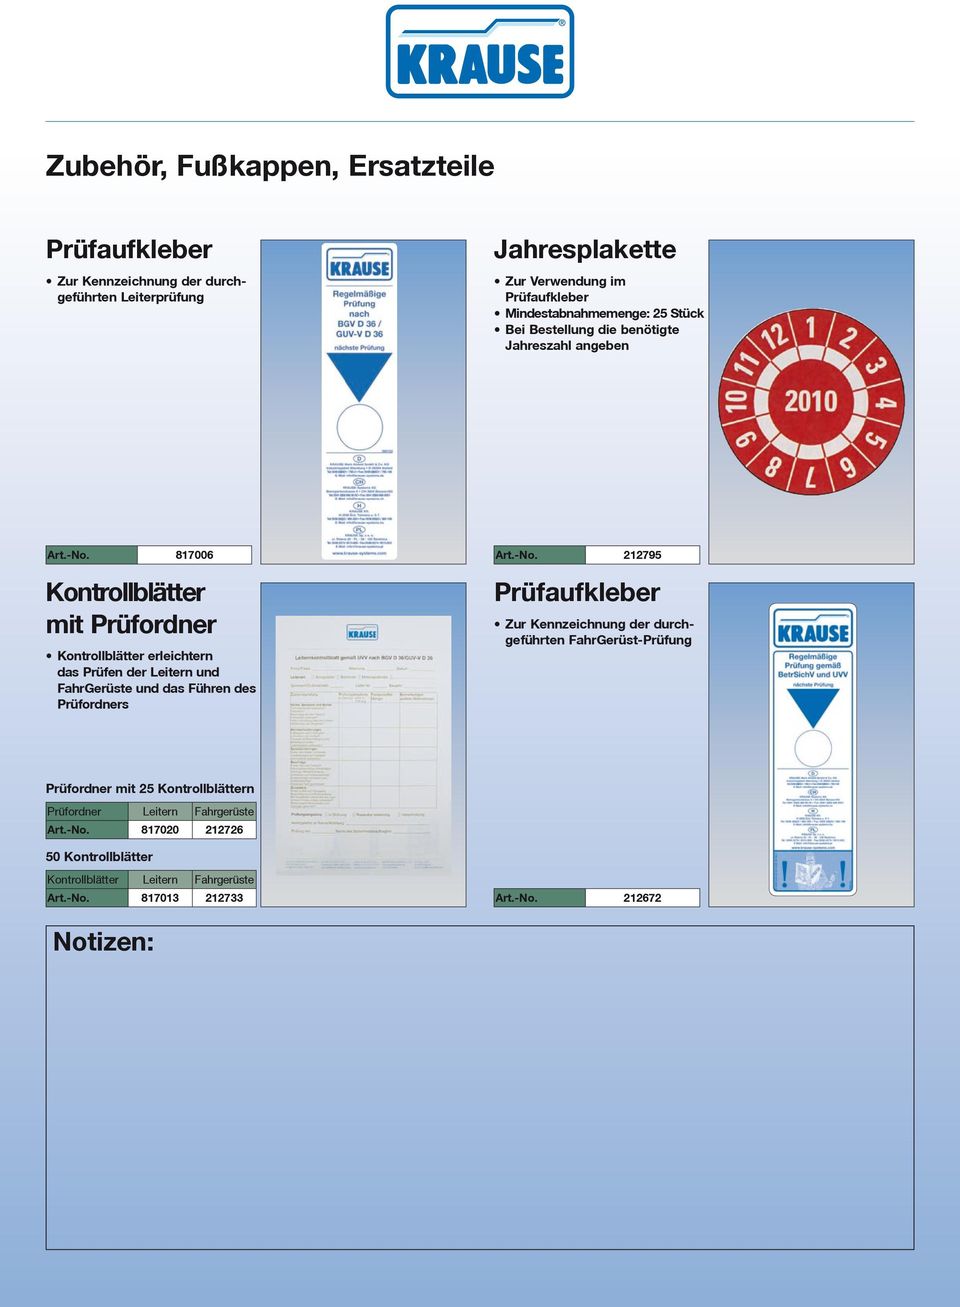 FahrGerüst-Prüfung Kontrollblätter erleichtern das Prüfen der Leitern und FahrGerüste und das Führen des Prüfordners Prüfordner mit